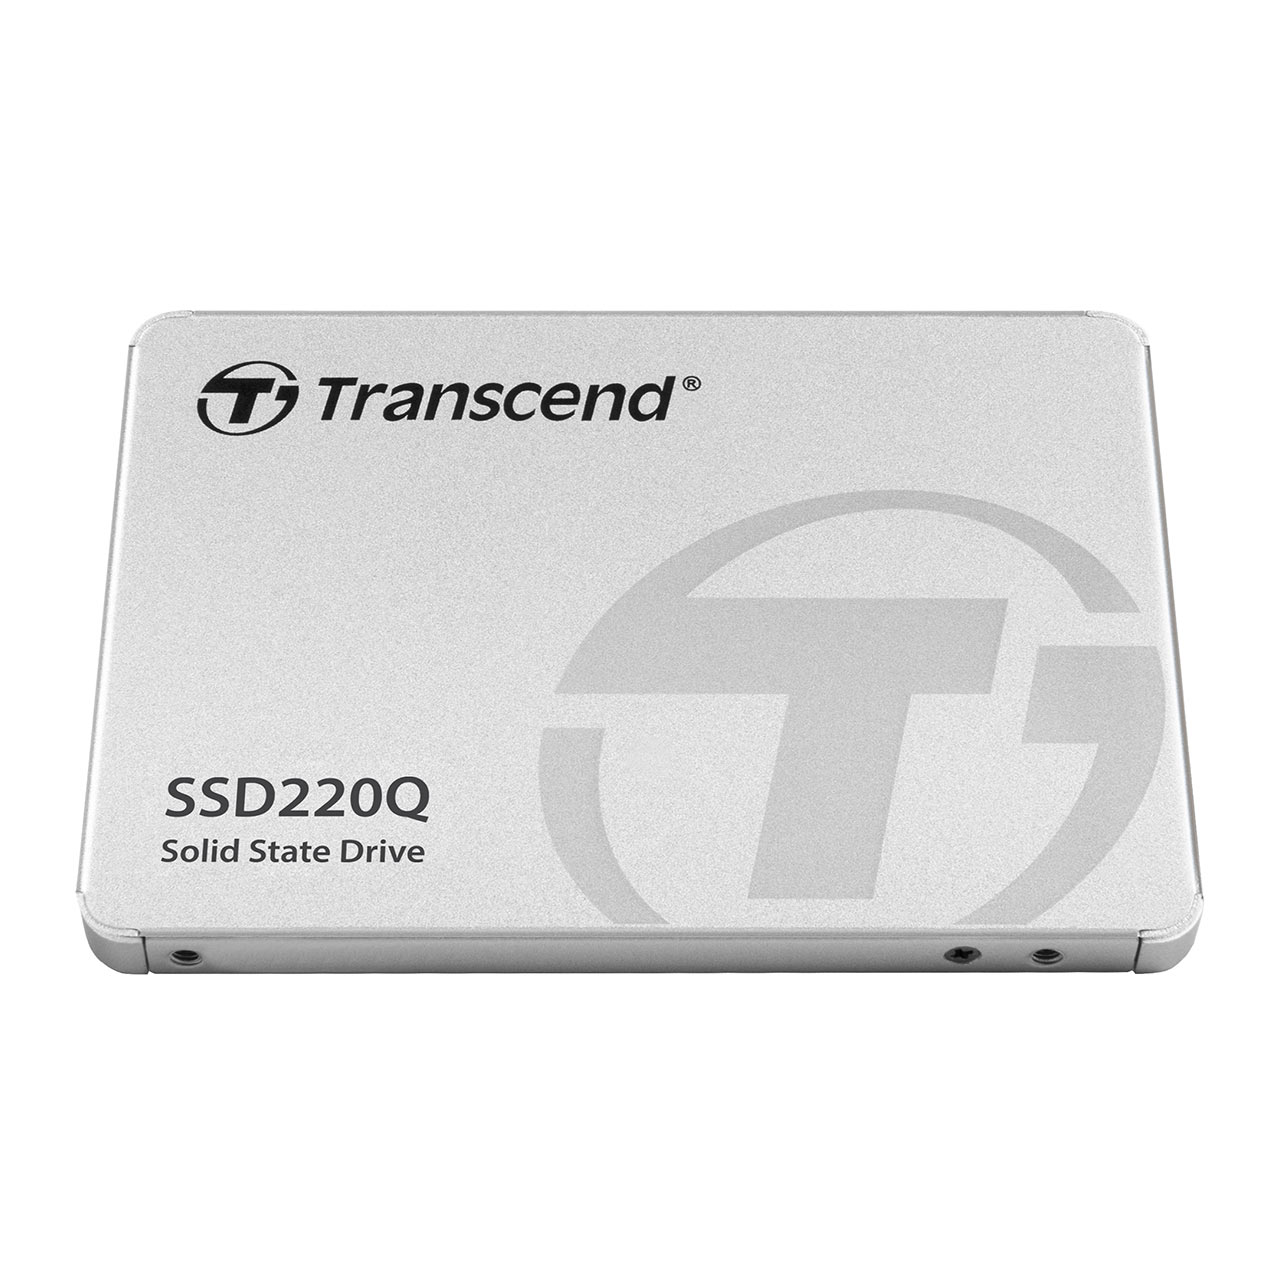 2.5インチ SATA SSD 500GB Transcend [TS500GSSD220Q]